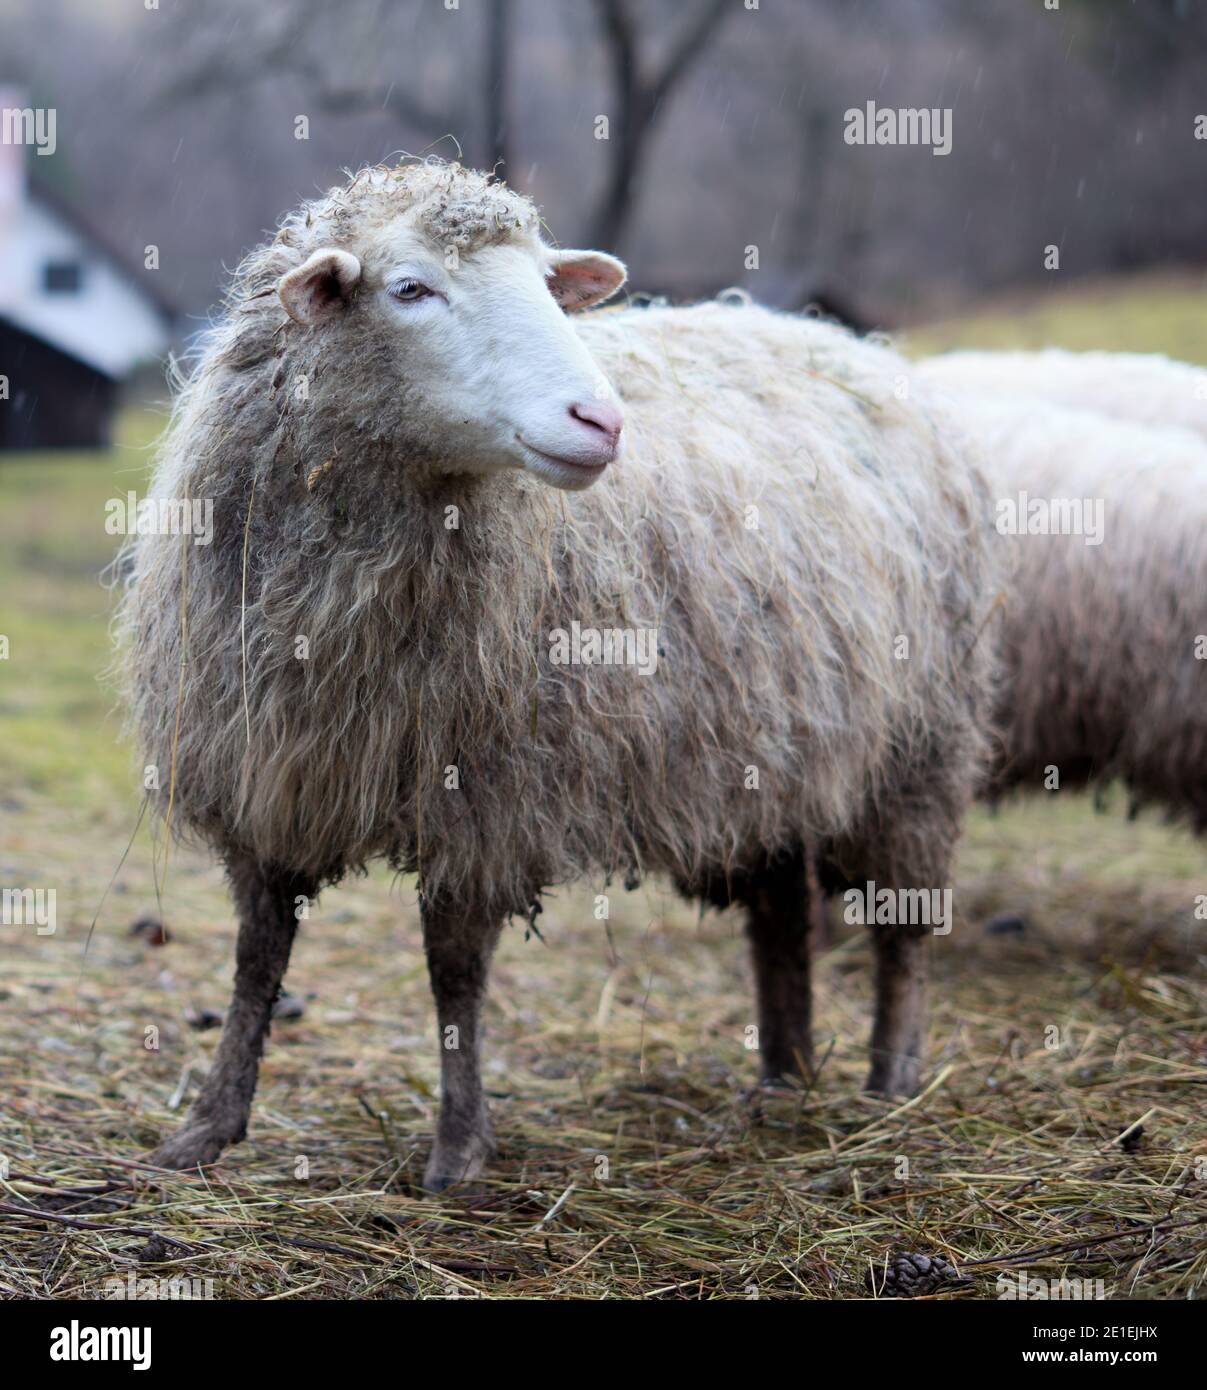 Sheep in Terchova, Orava, Slovakia Stock Photo